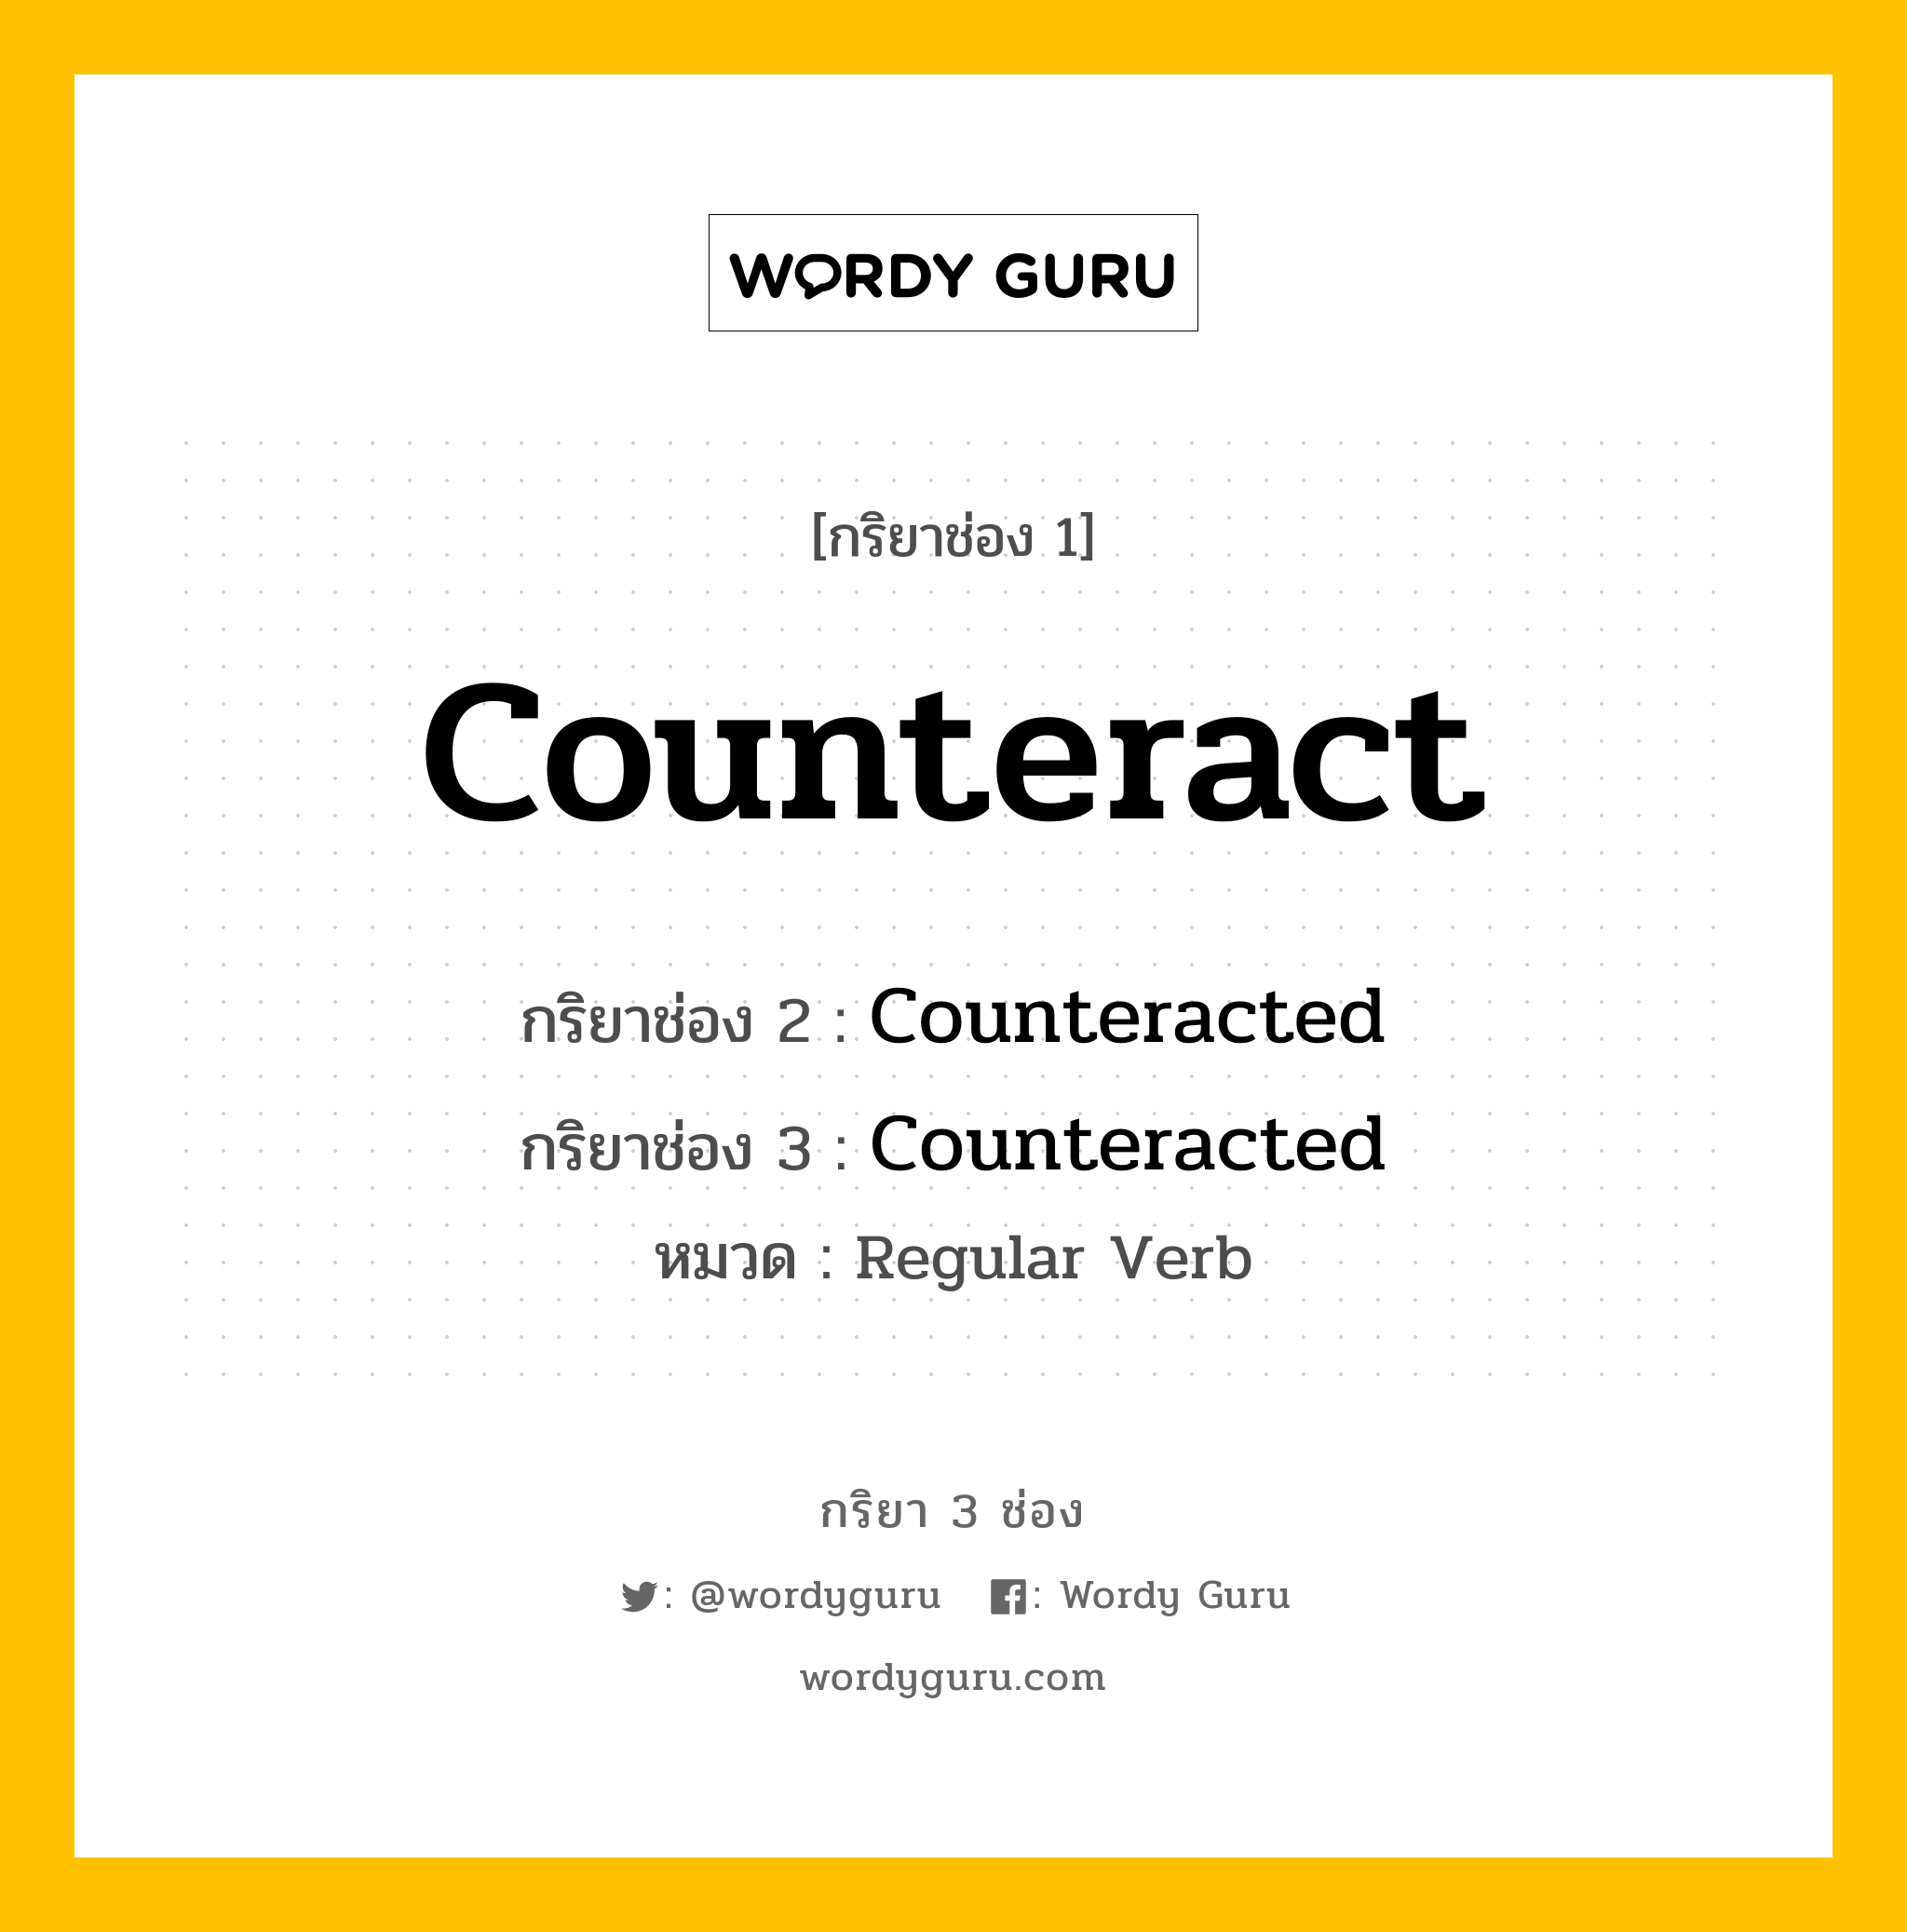 กริยา 3 ช่อง: Counteract ช่อง 2 Counteract ช่อง 3 คืออะไร, กริยาช่อง 1 Counteract กริยาช่อง 2 Counteracted กริยาช่อง 3 Counteracted หมวด Regular Verb หมวด Regular Verb